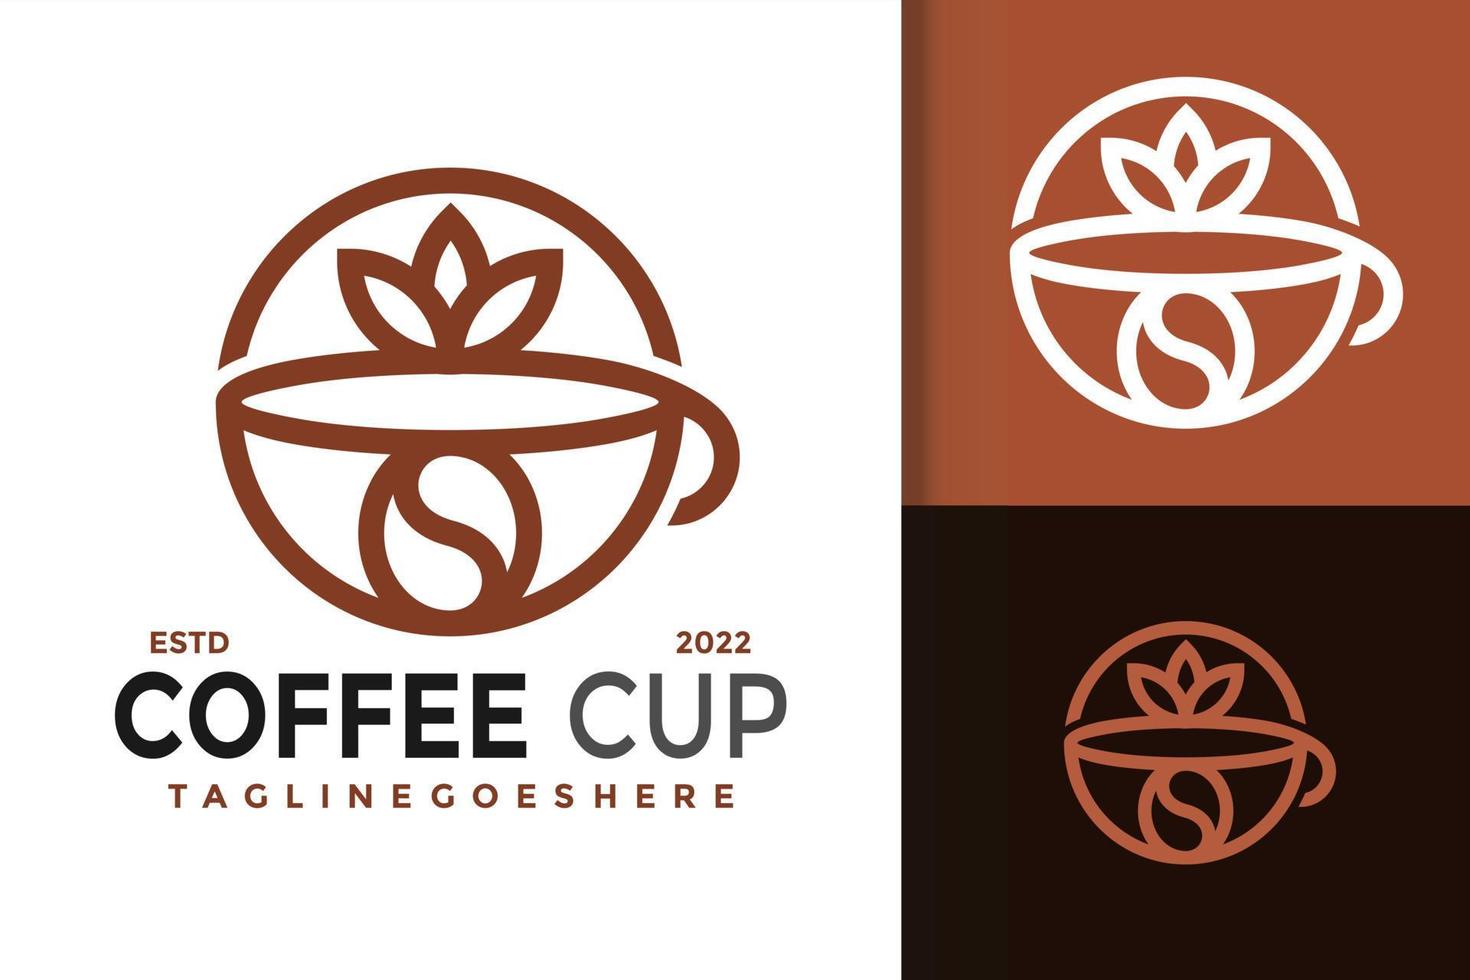 création de logo de tasse à café, vecteur de logos d'identité de marque, logo moderne, modèle d'illustration vectorielle de conceptions de logo